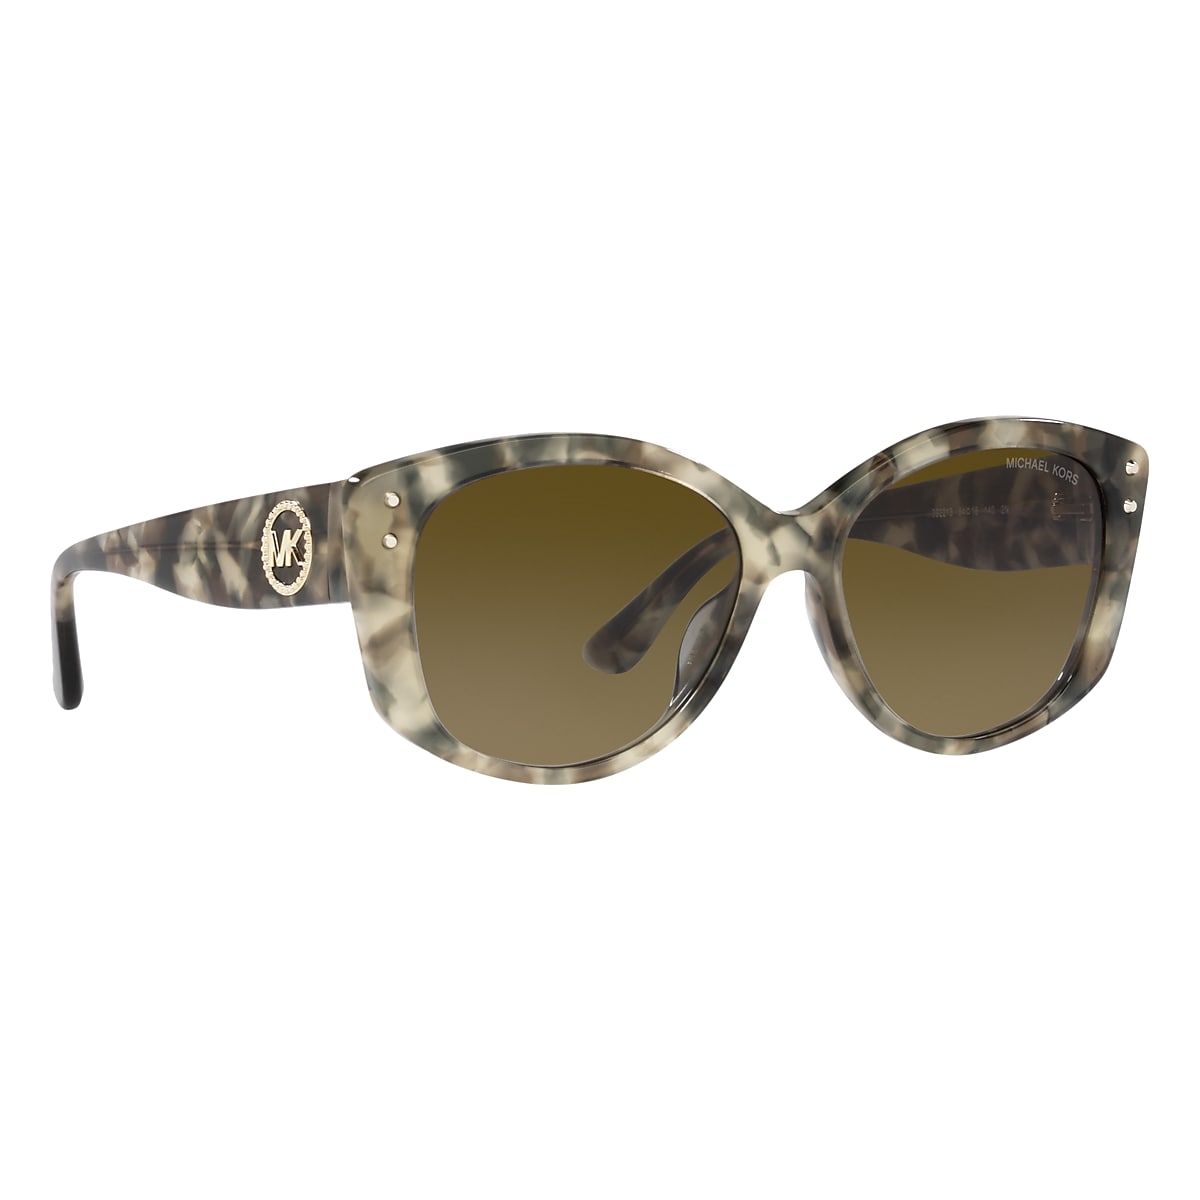 Michael Kors camel leather jacket, Prada tortoiseshell sunglasses